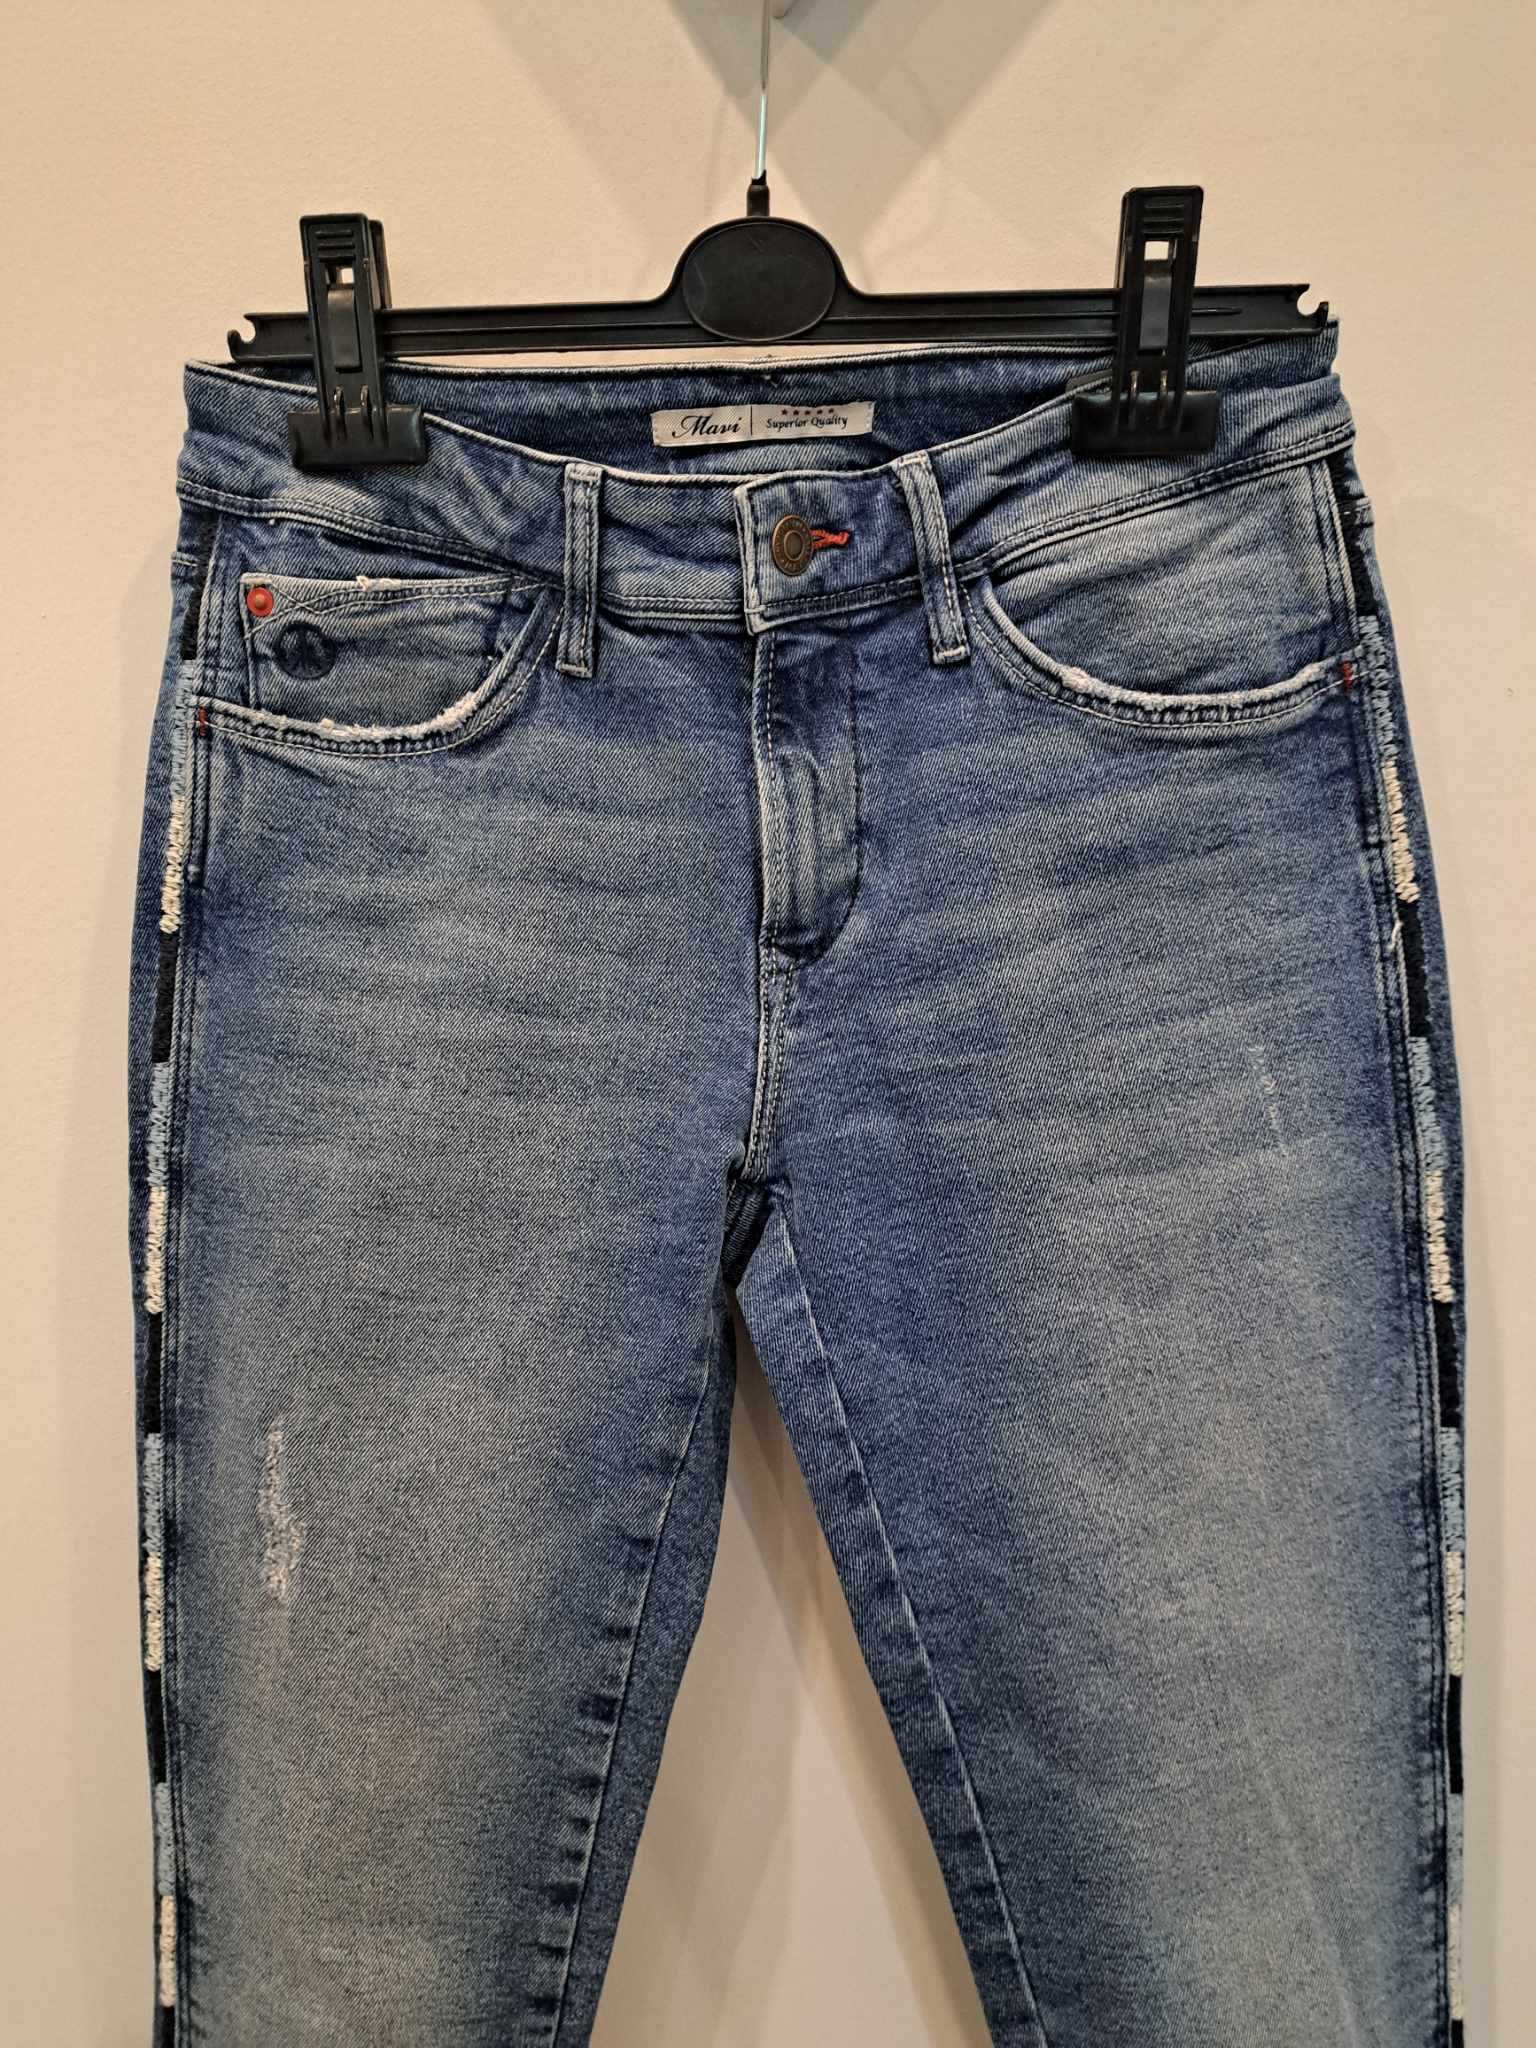 Spodnie jeans, damskie roz. S, przedzierane, niebieskie